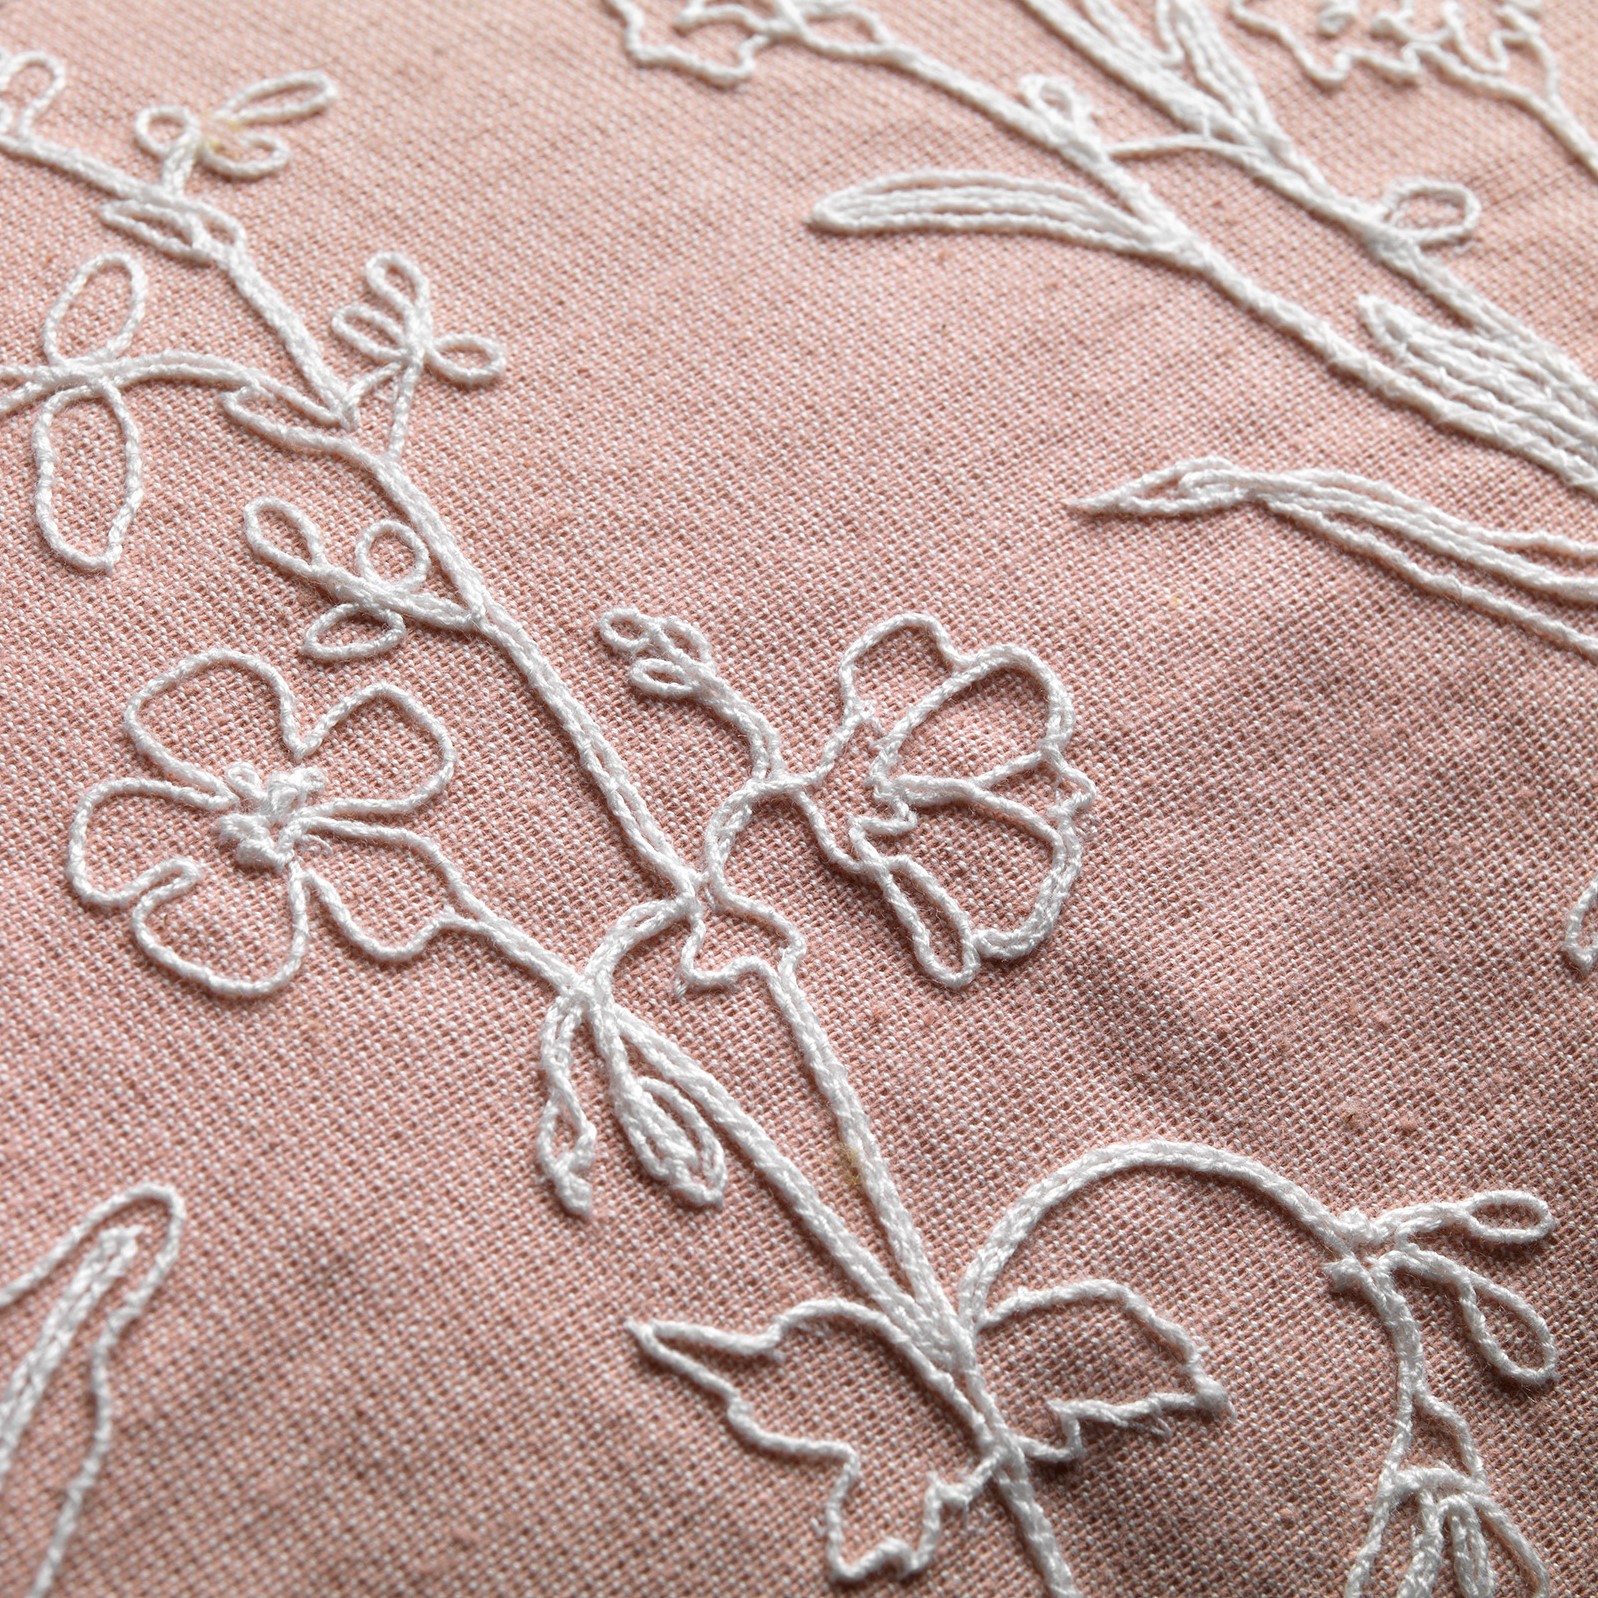 MADELIN - Sierkussen van katoen Muted Clay 40x60 cm - roze